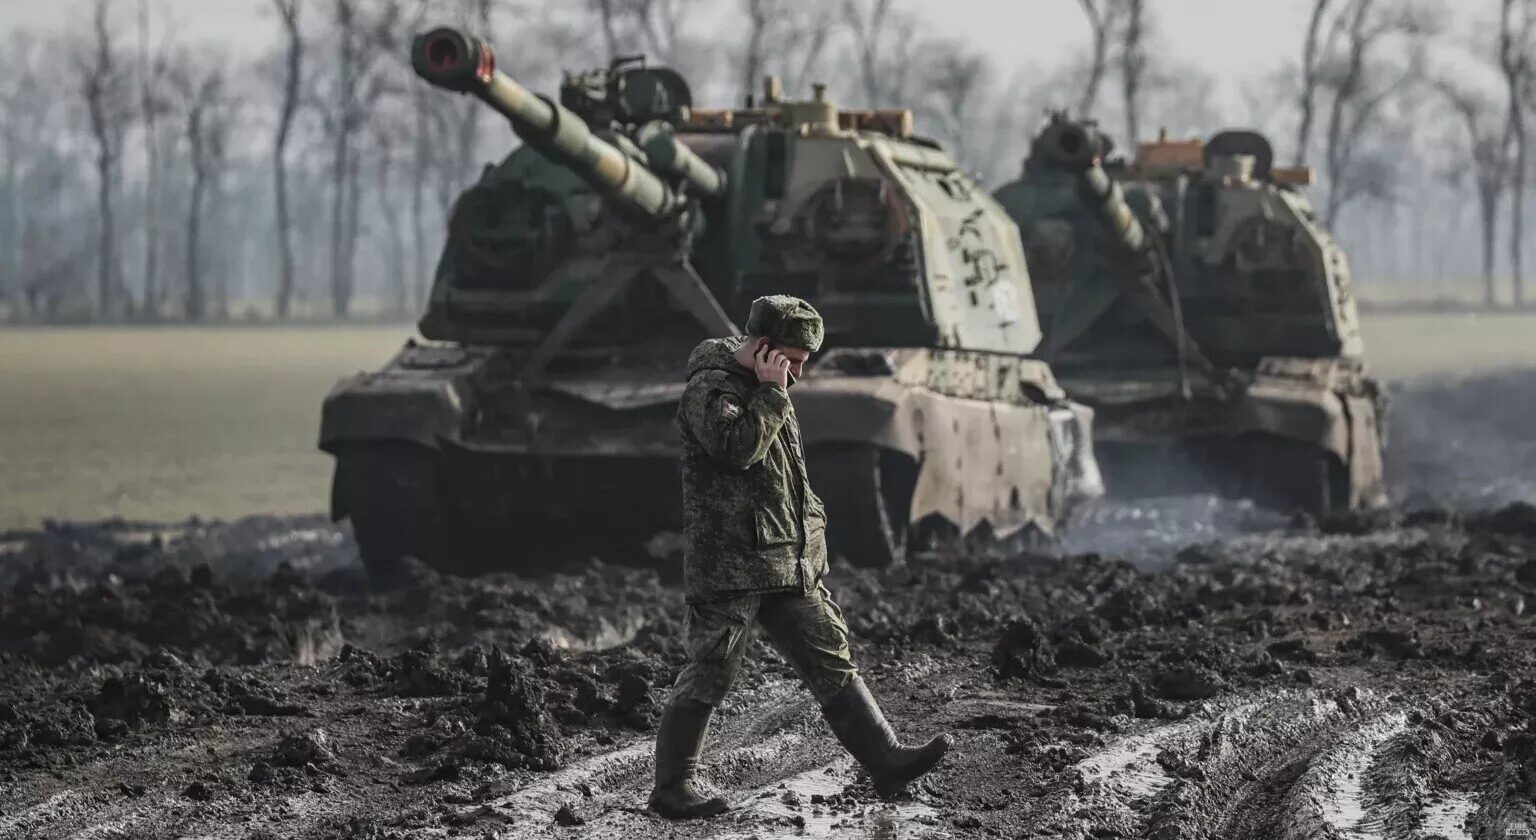 Ռուսական ռազմական գործողություններ Ուկրաինայում, օր 10 (թարմացվող առցանց լուսաբանում)